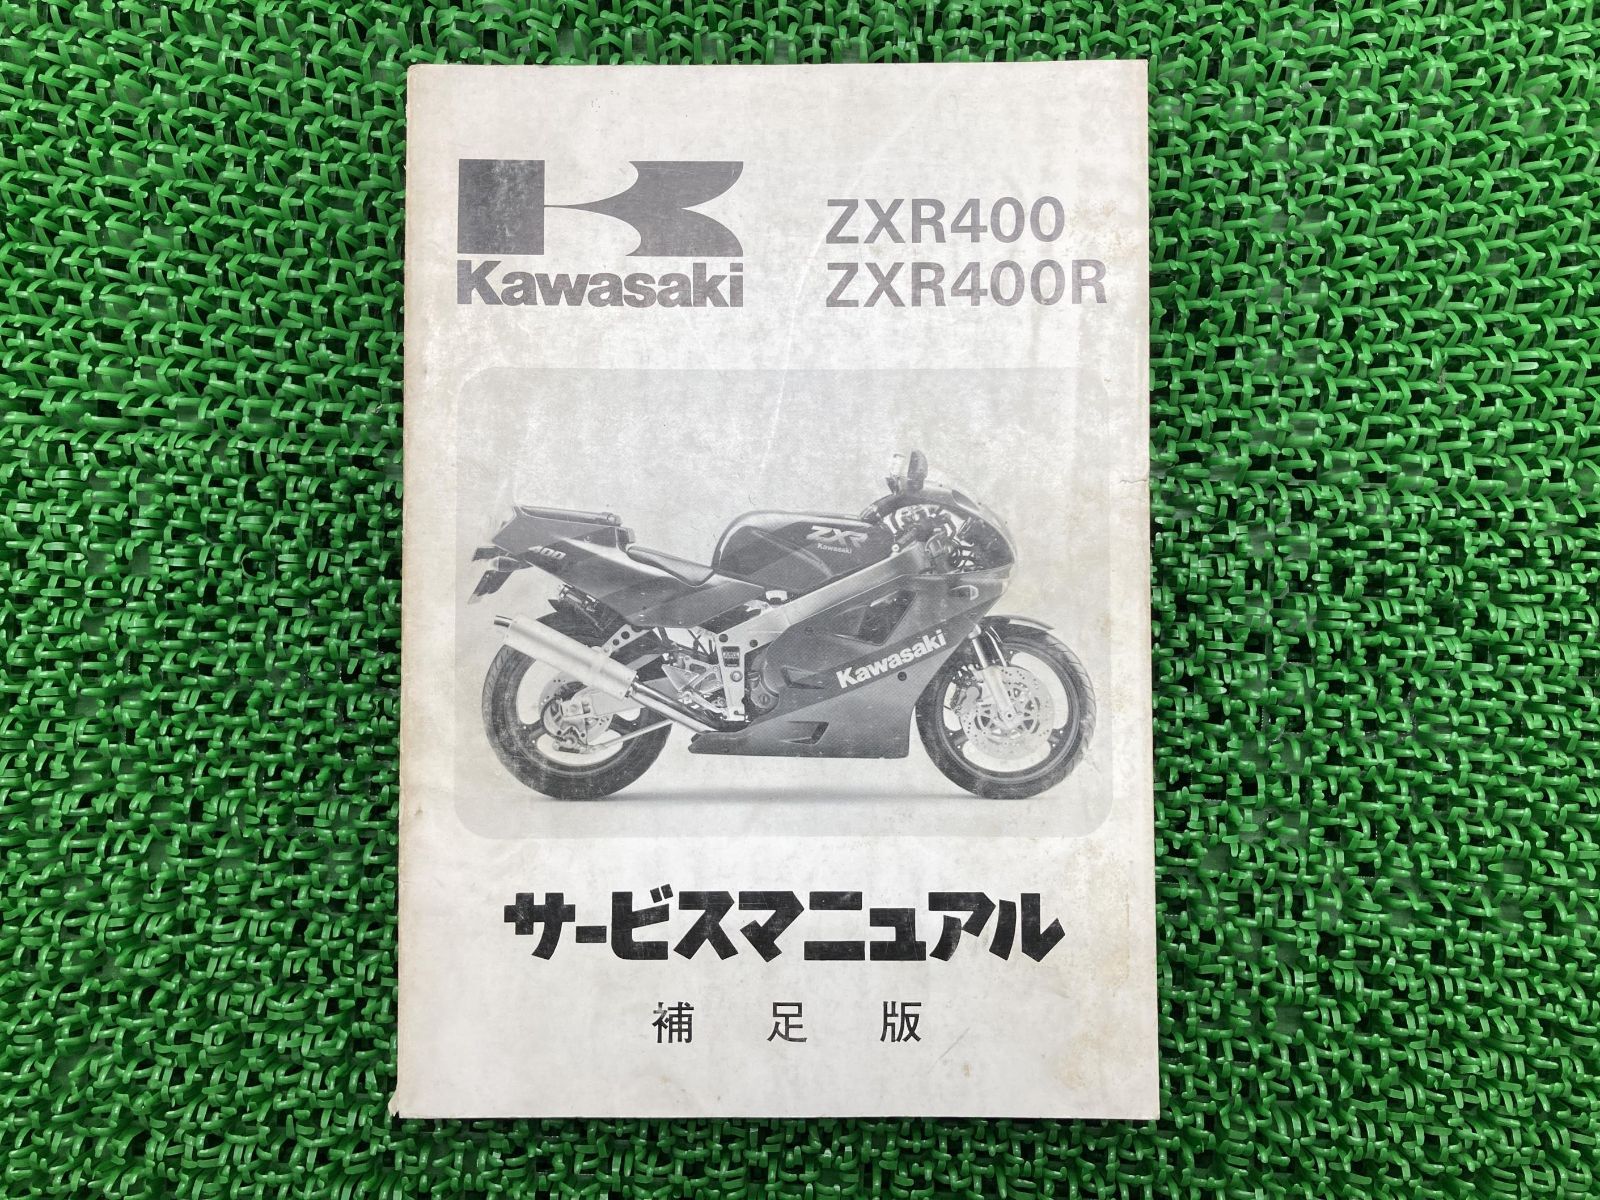 KAWASAKI KAWASAKI:カワサキ サービスマニュアル (基本版) NINJA 650 KAWASAKI カワサキ KAWASAKI  カワサキ 通販